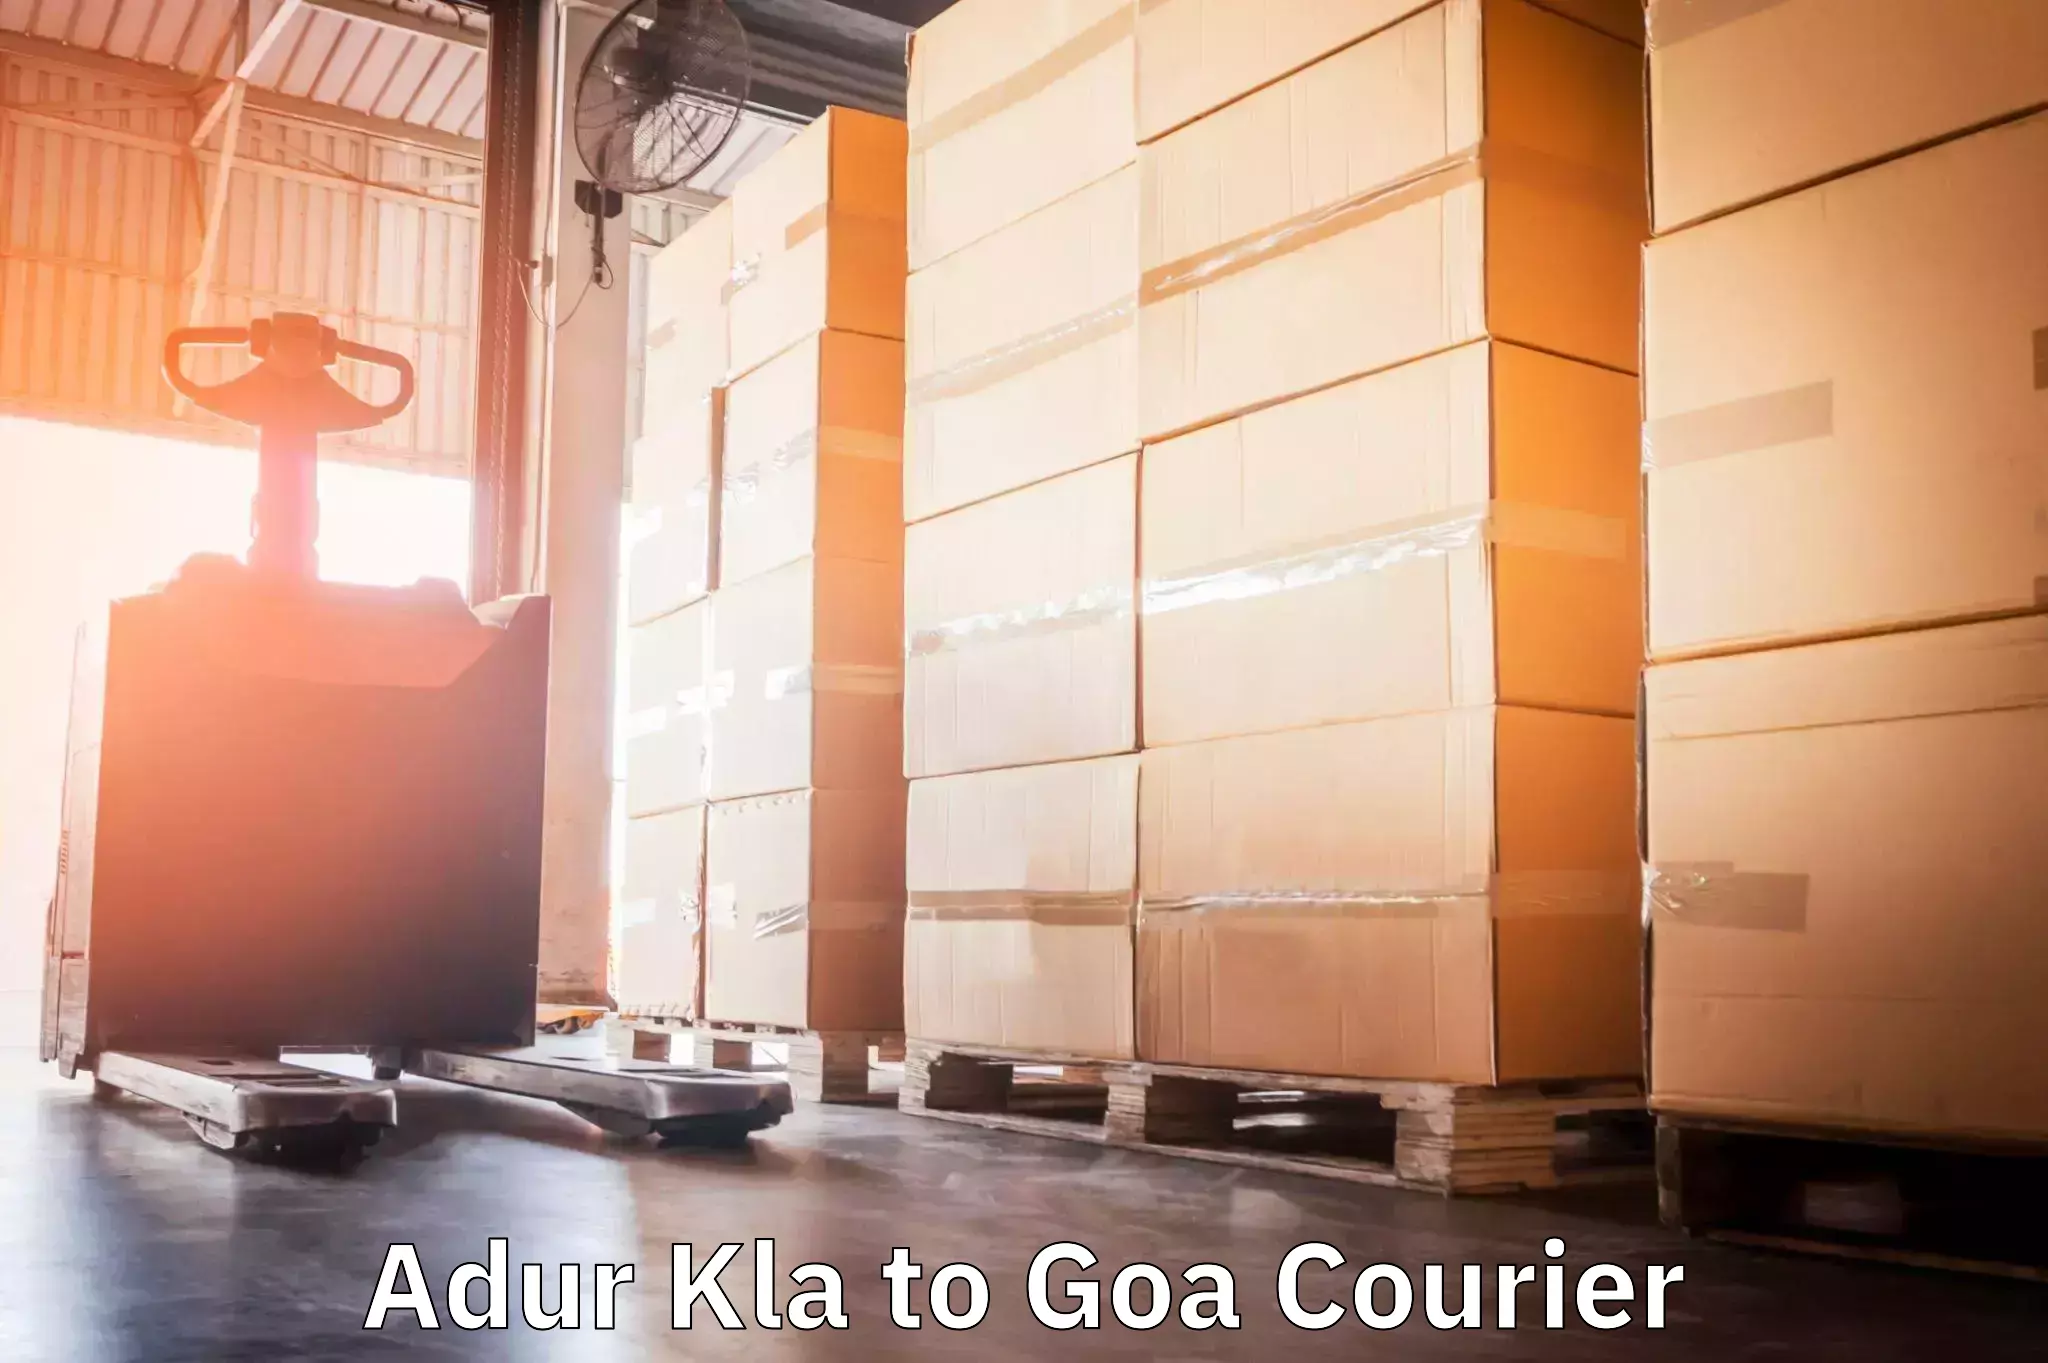 Next-generation courier services Adur Kla to South Goa